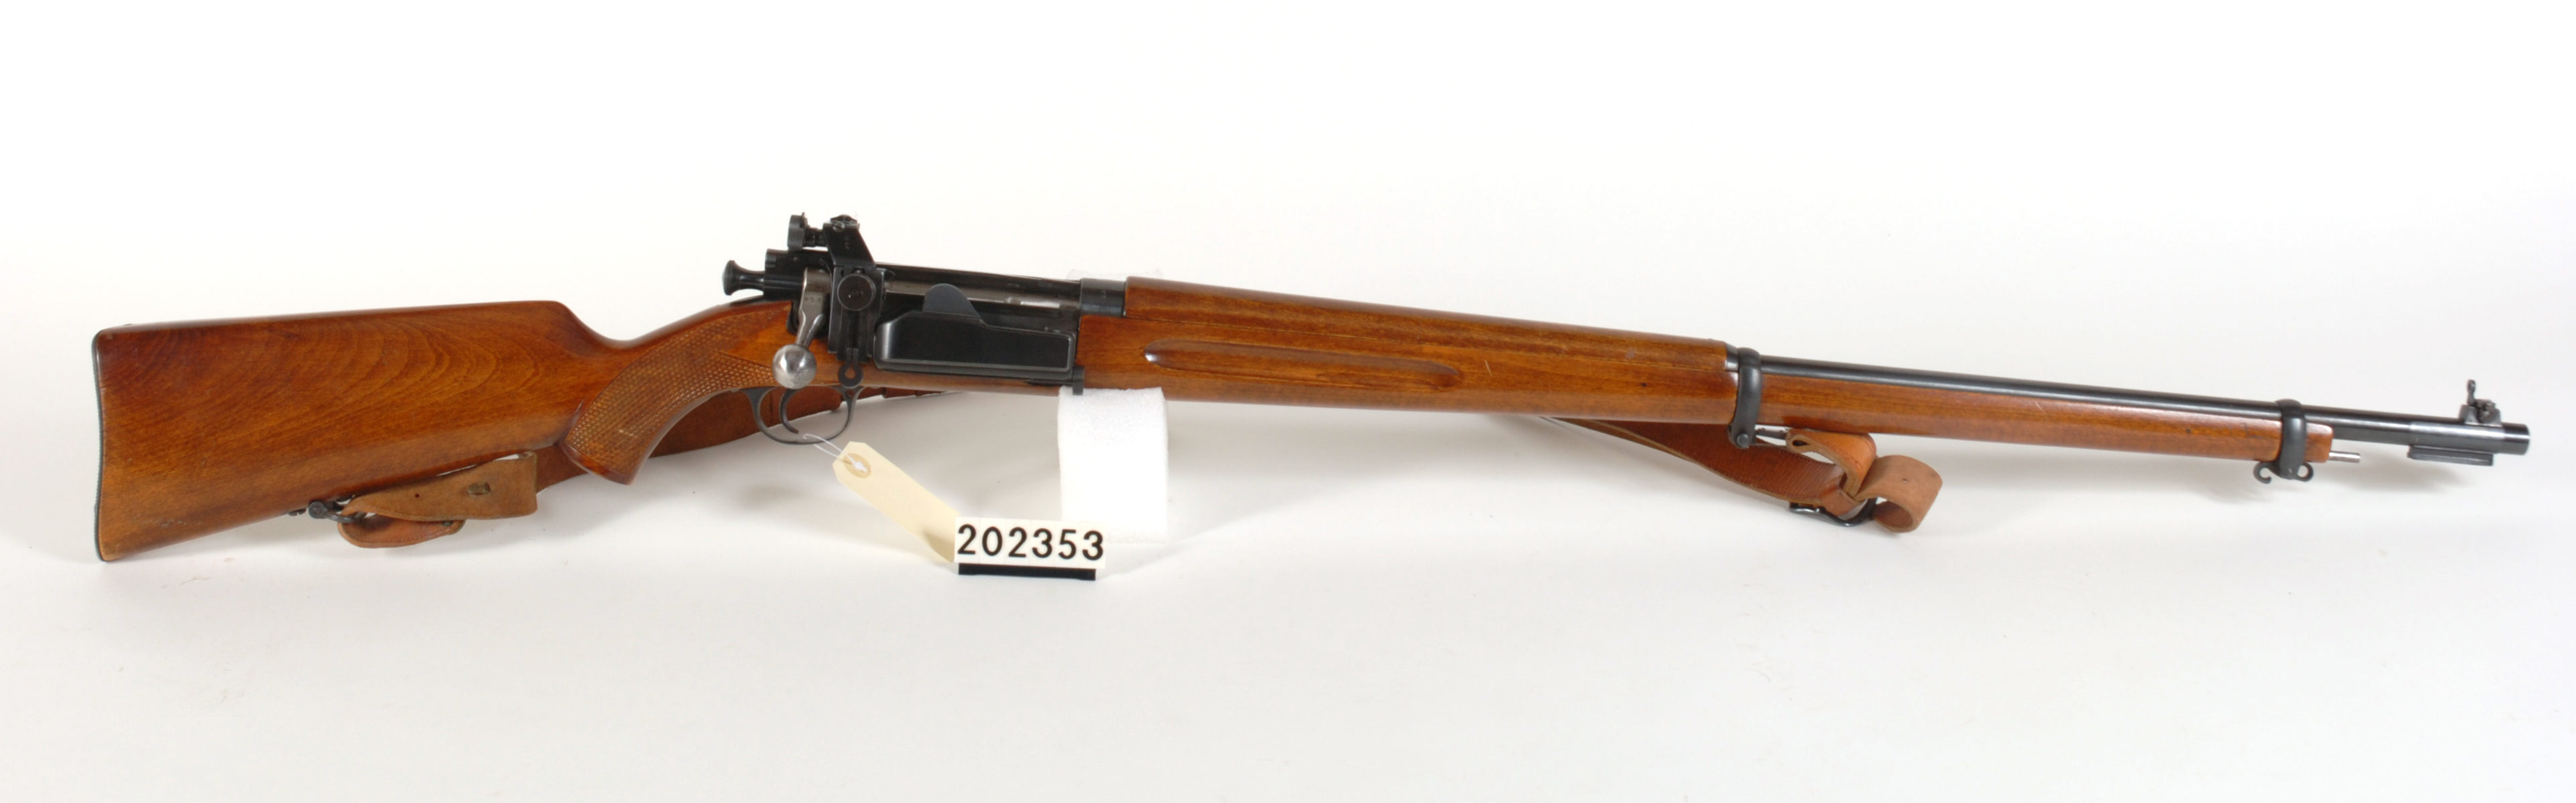 ./guns/rifle/bilder/Rifle-Kongsberg-Krag-M1925-FMU.202353.jpg